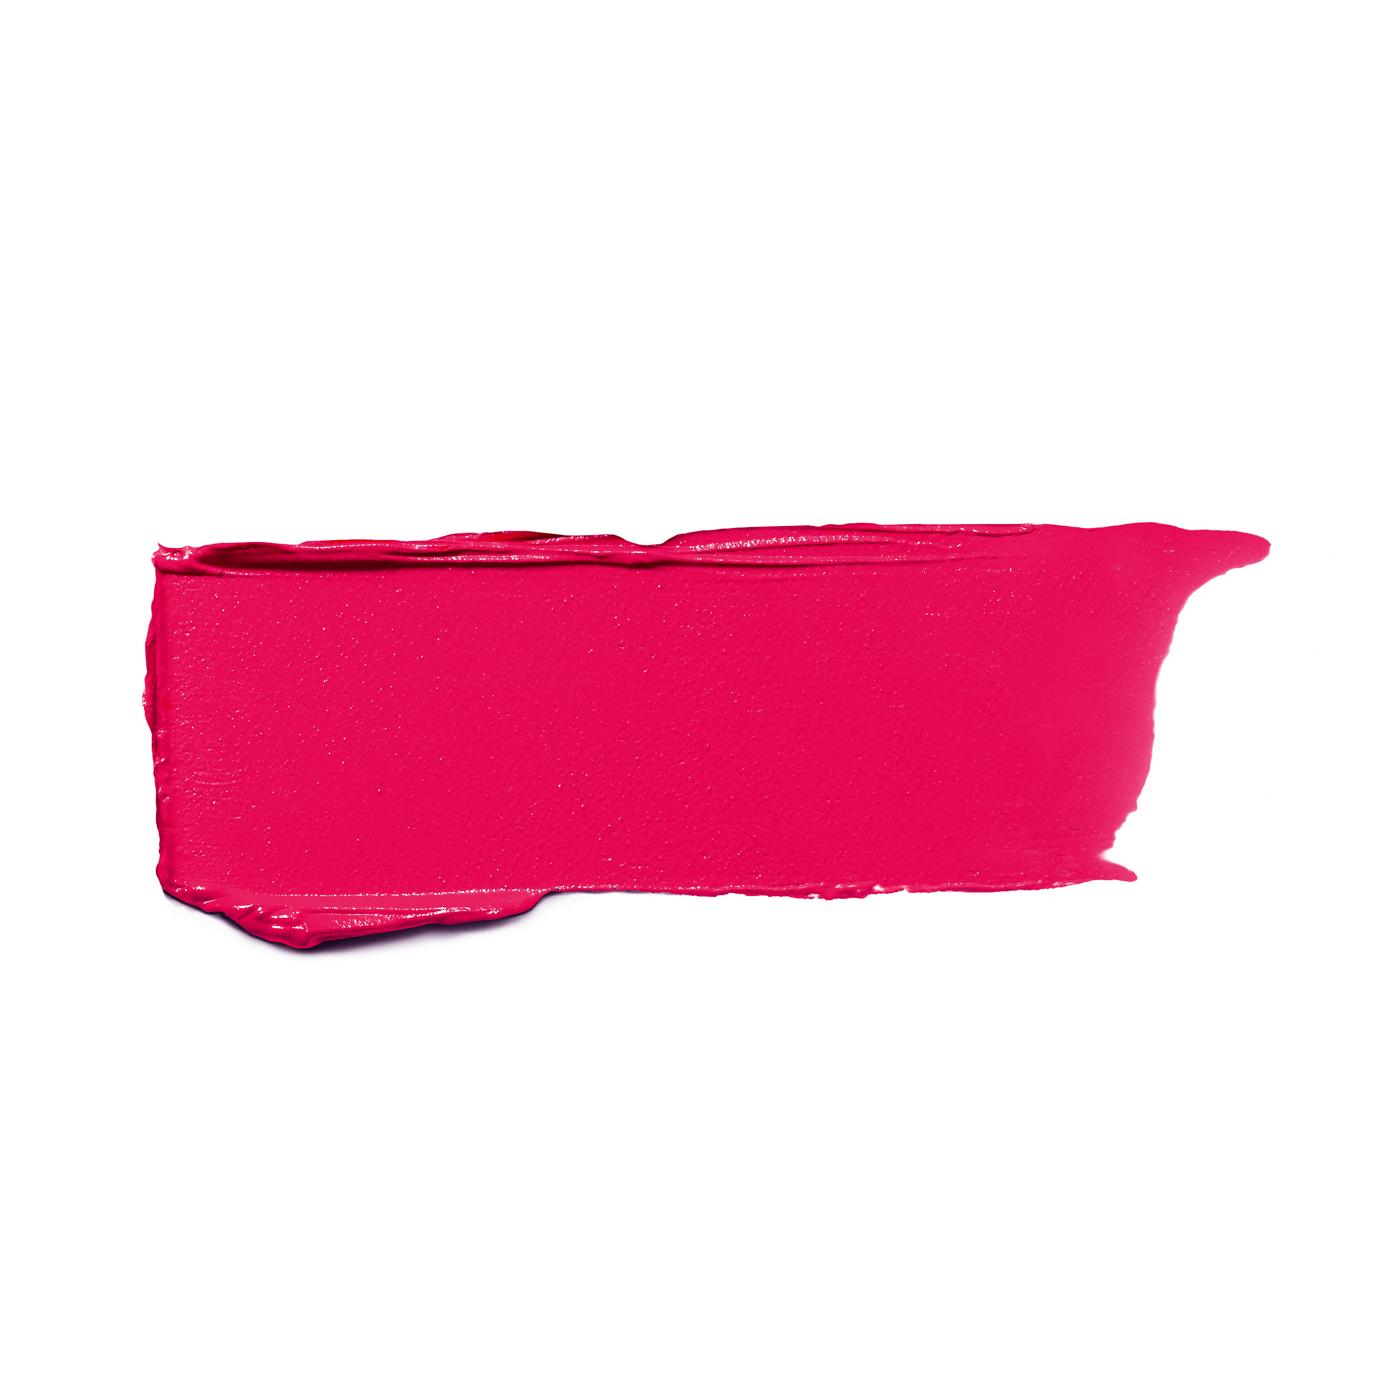 L'Oréal Paris Colour Riche Original Satin Lipstick for Moisturized Lips Raspberry Rush; image 2 of 2